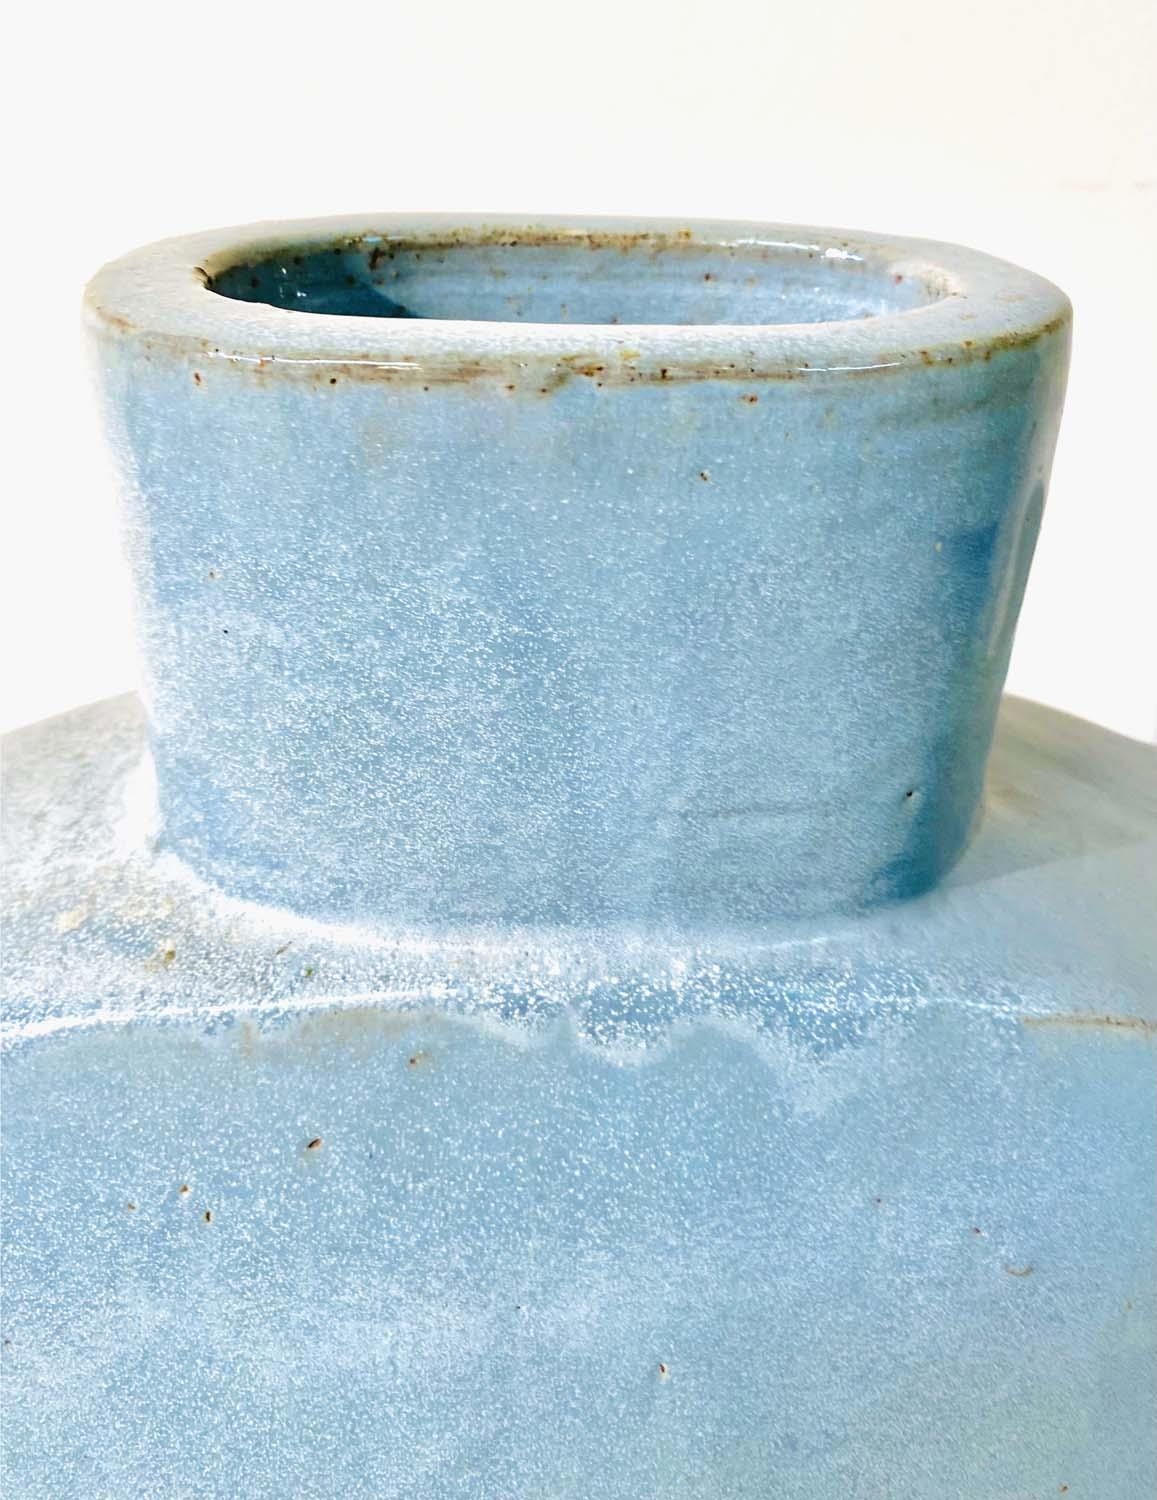 CHINESE STYLE MOON VASE, light blue glazed ceramic, 72cm H x 70cm W - Image 3 of 5